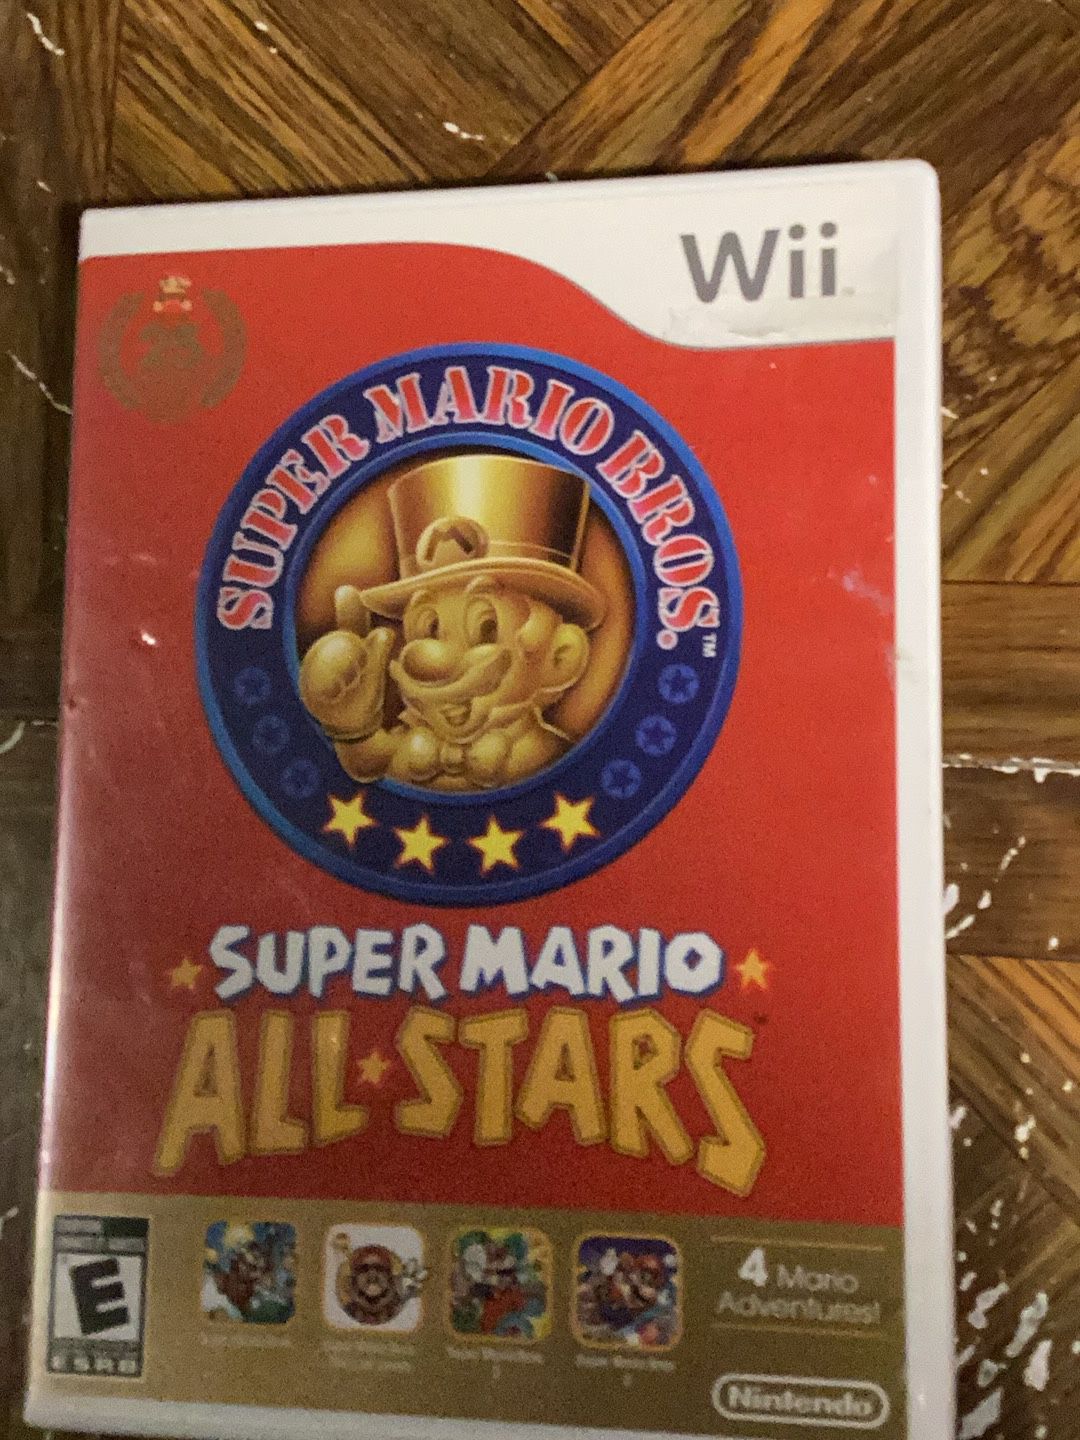 Super Mario All Stars Wii